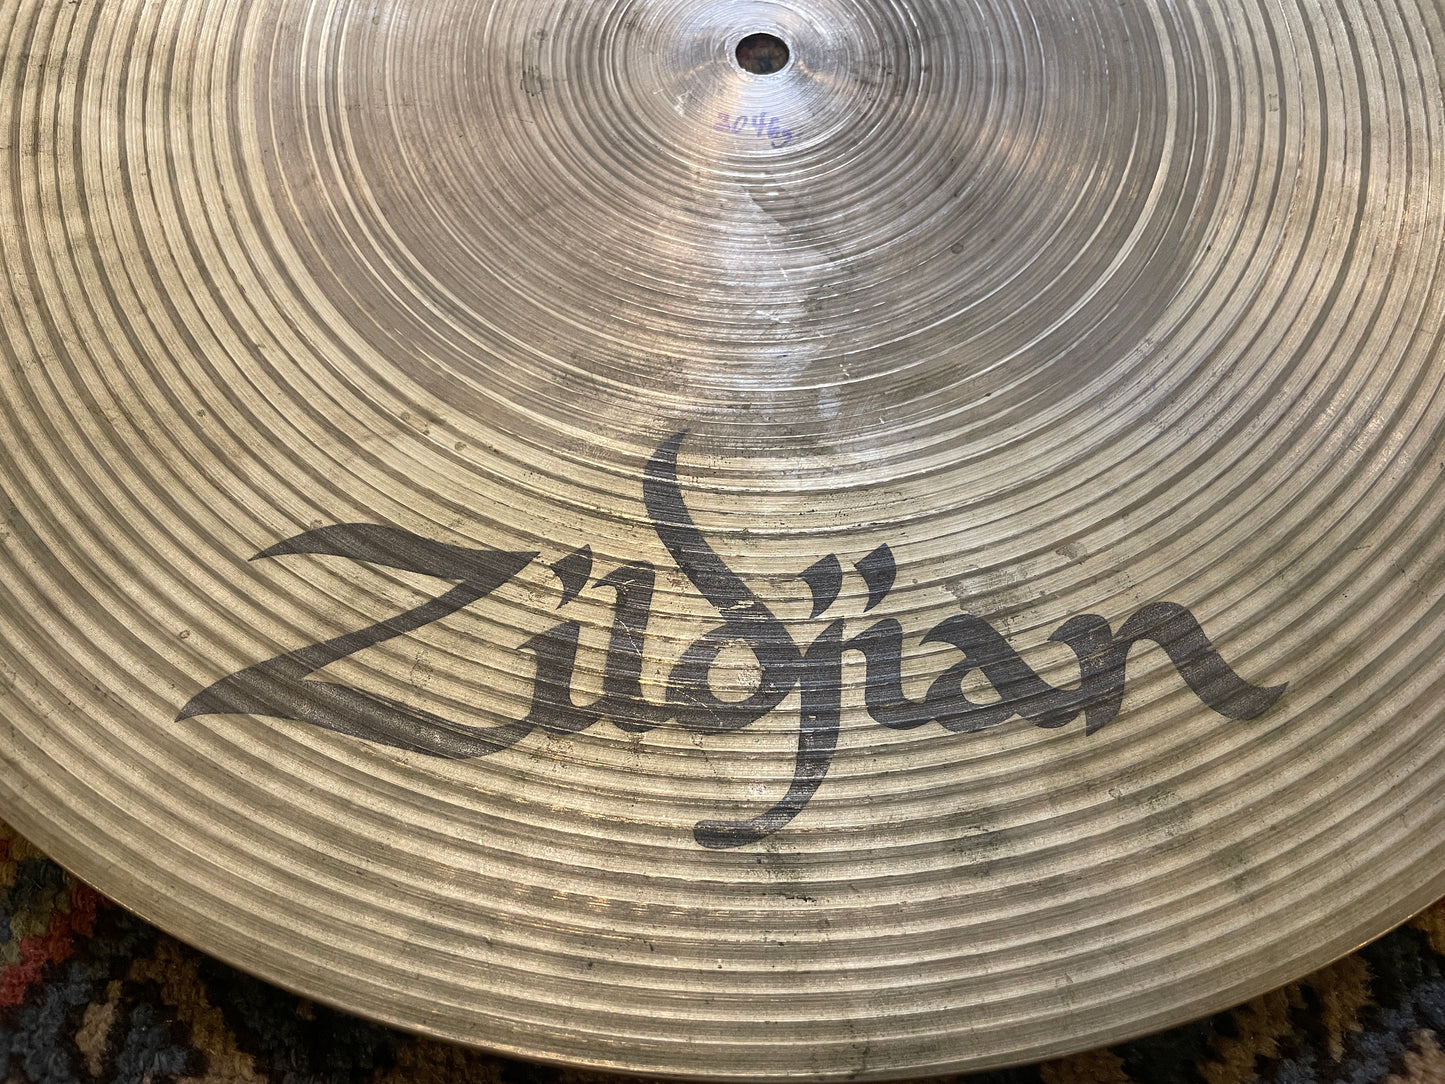 18" Zildjian A Flat Top Ride Cymbal 2046g